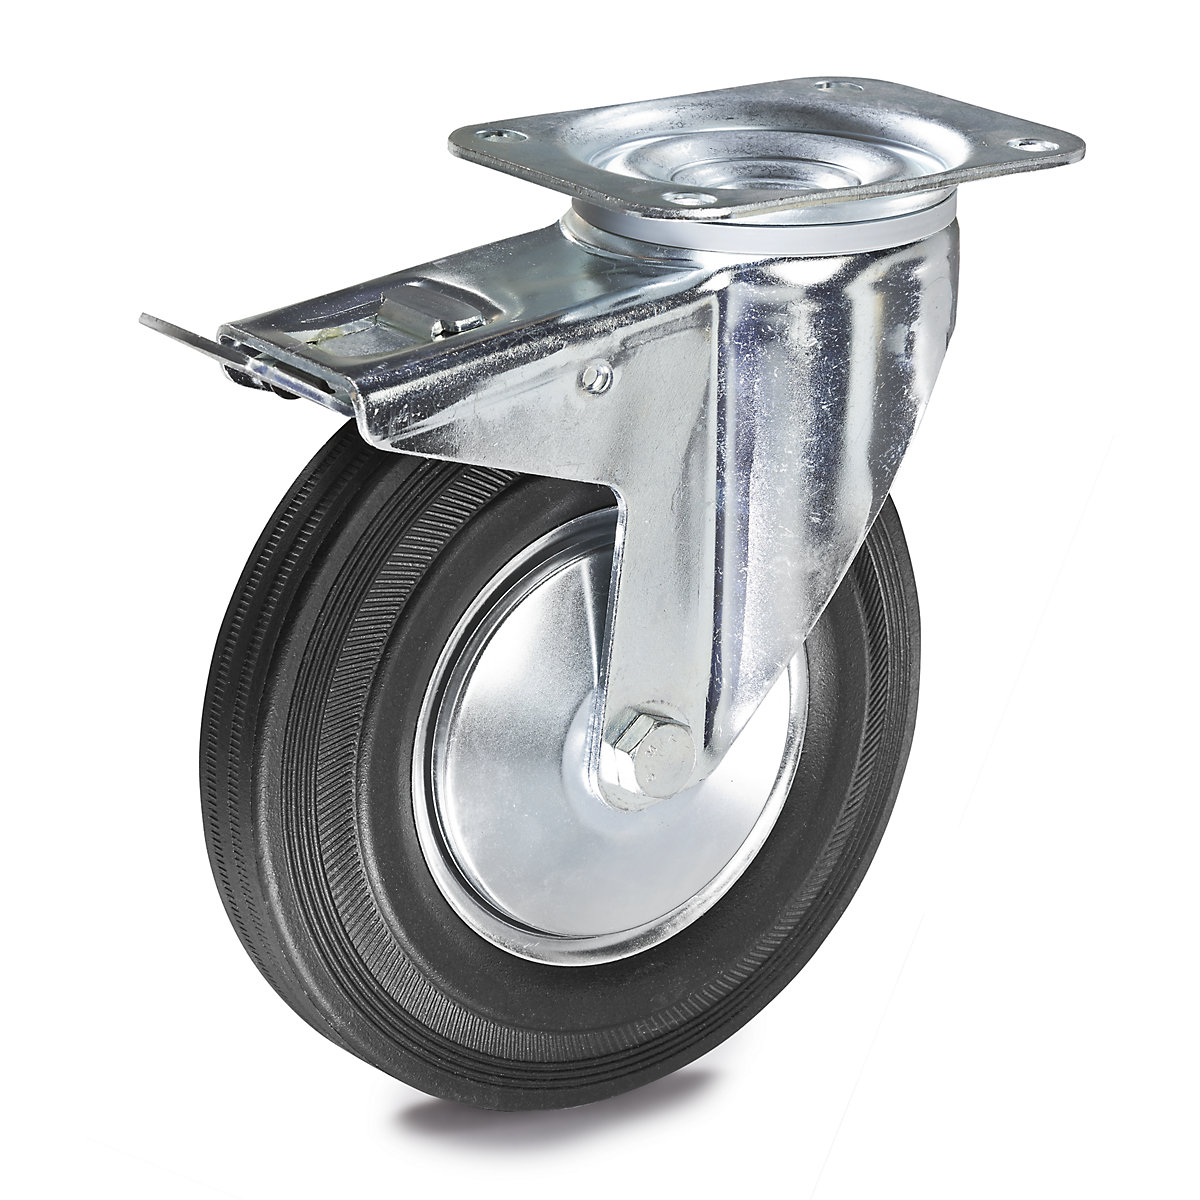 Solid rubber tyre – TENTE, wheel Ø x width 160 x 40 mm, swivel castor with double stop-5